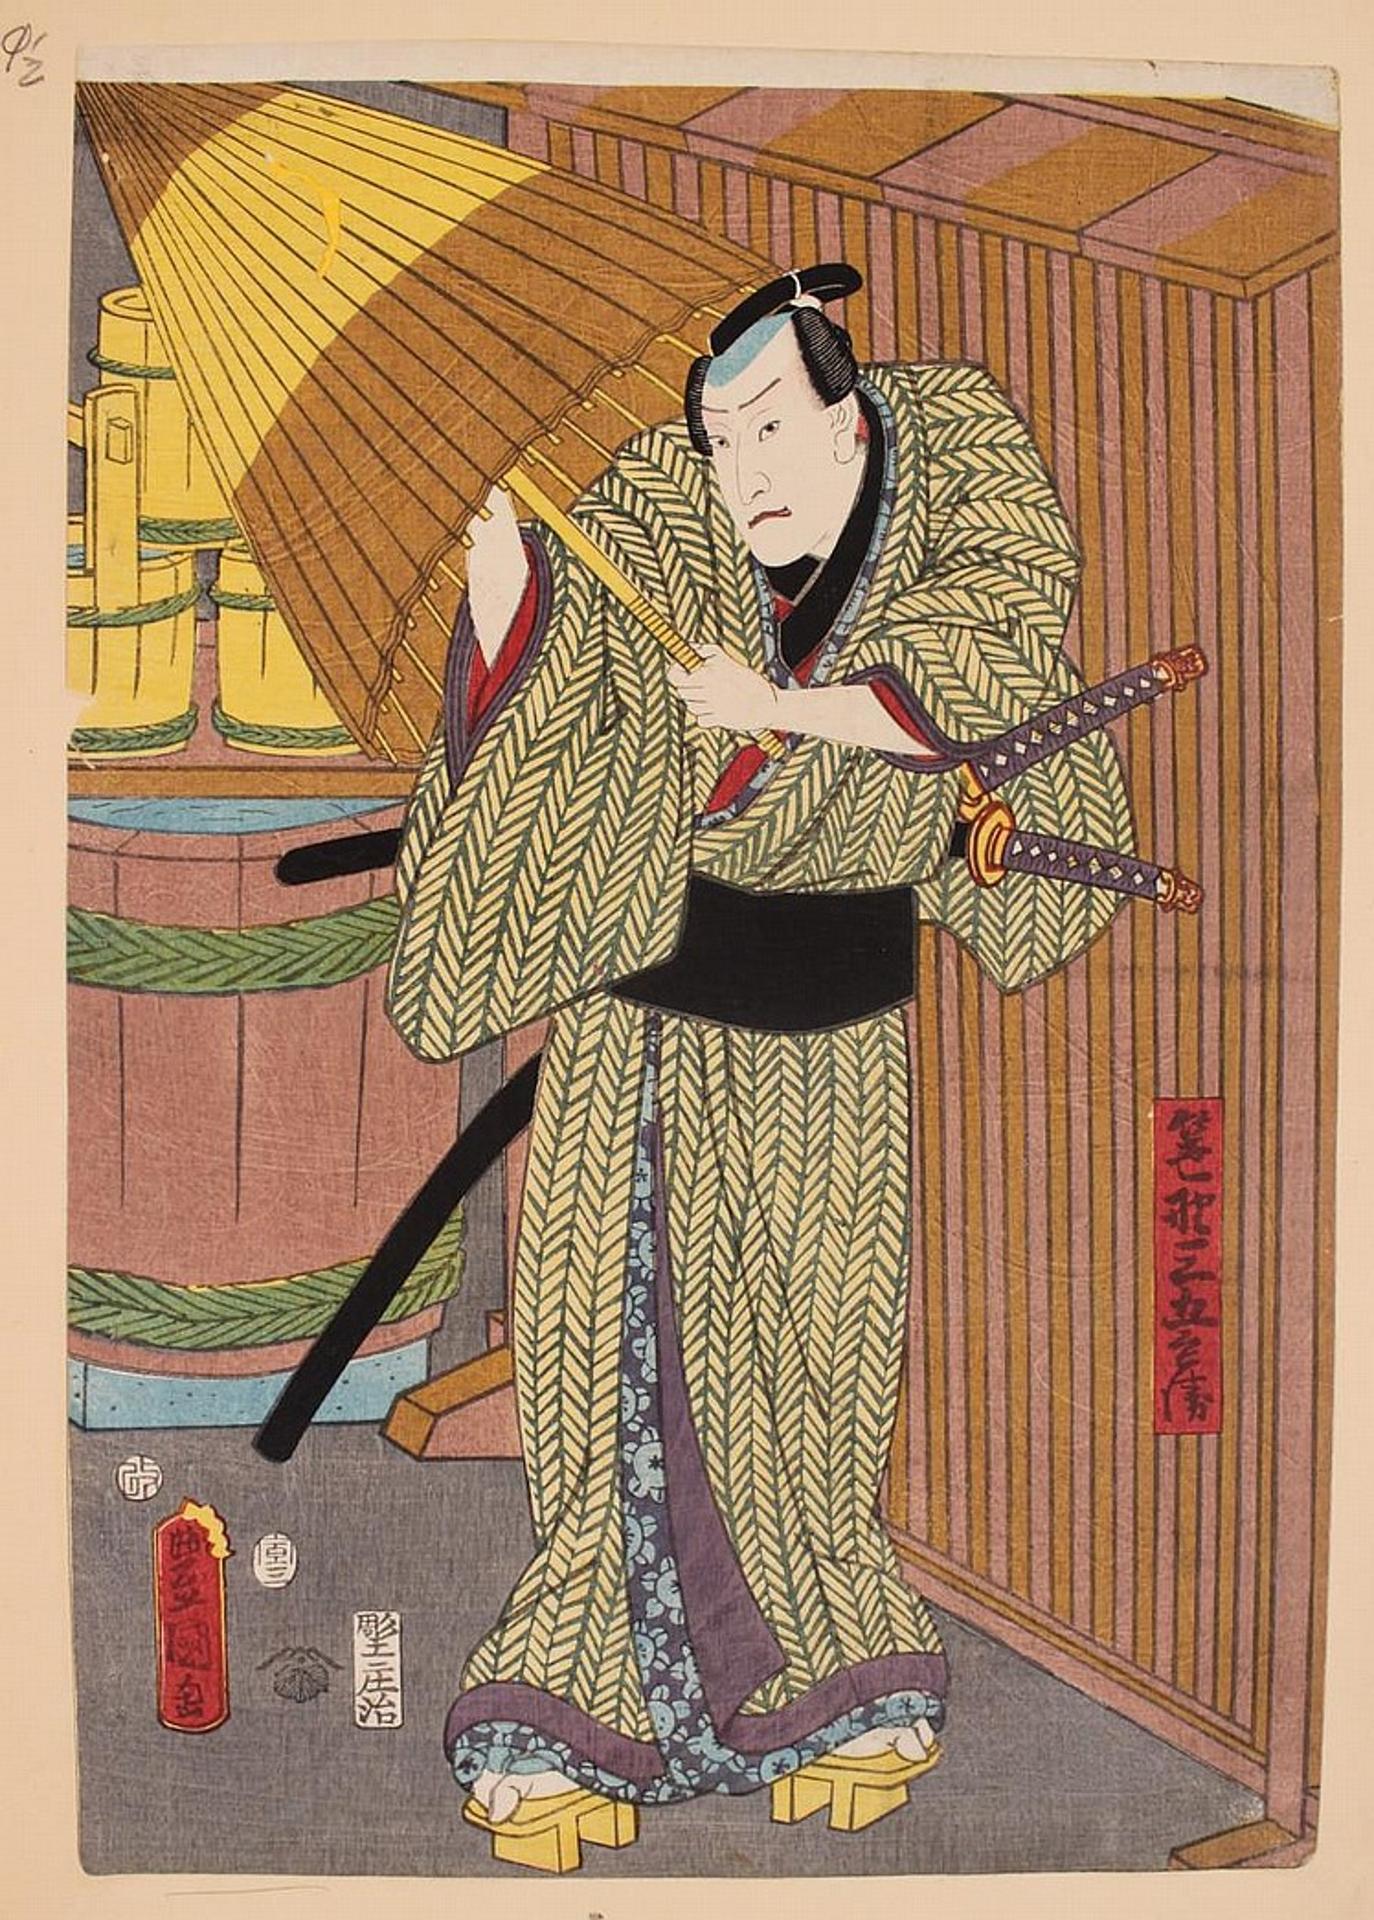 Utagawa [Toyokuni III] Kunisada (1786-1865) - Assorted ukiyo-e subject matter regarding masculine subject matter